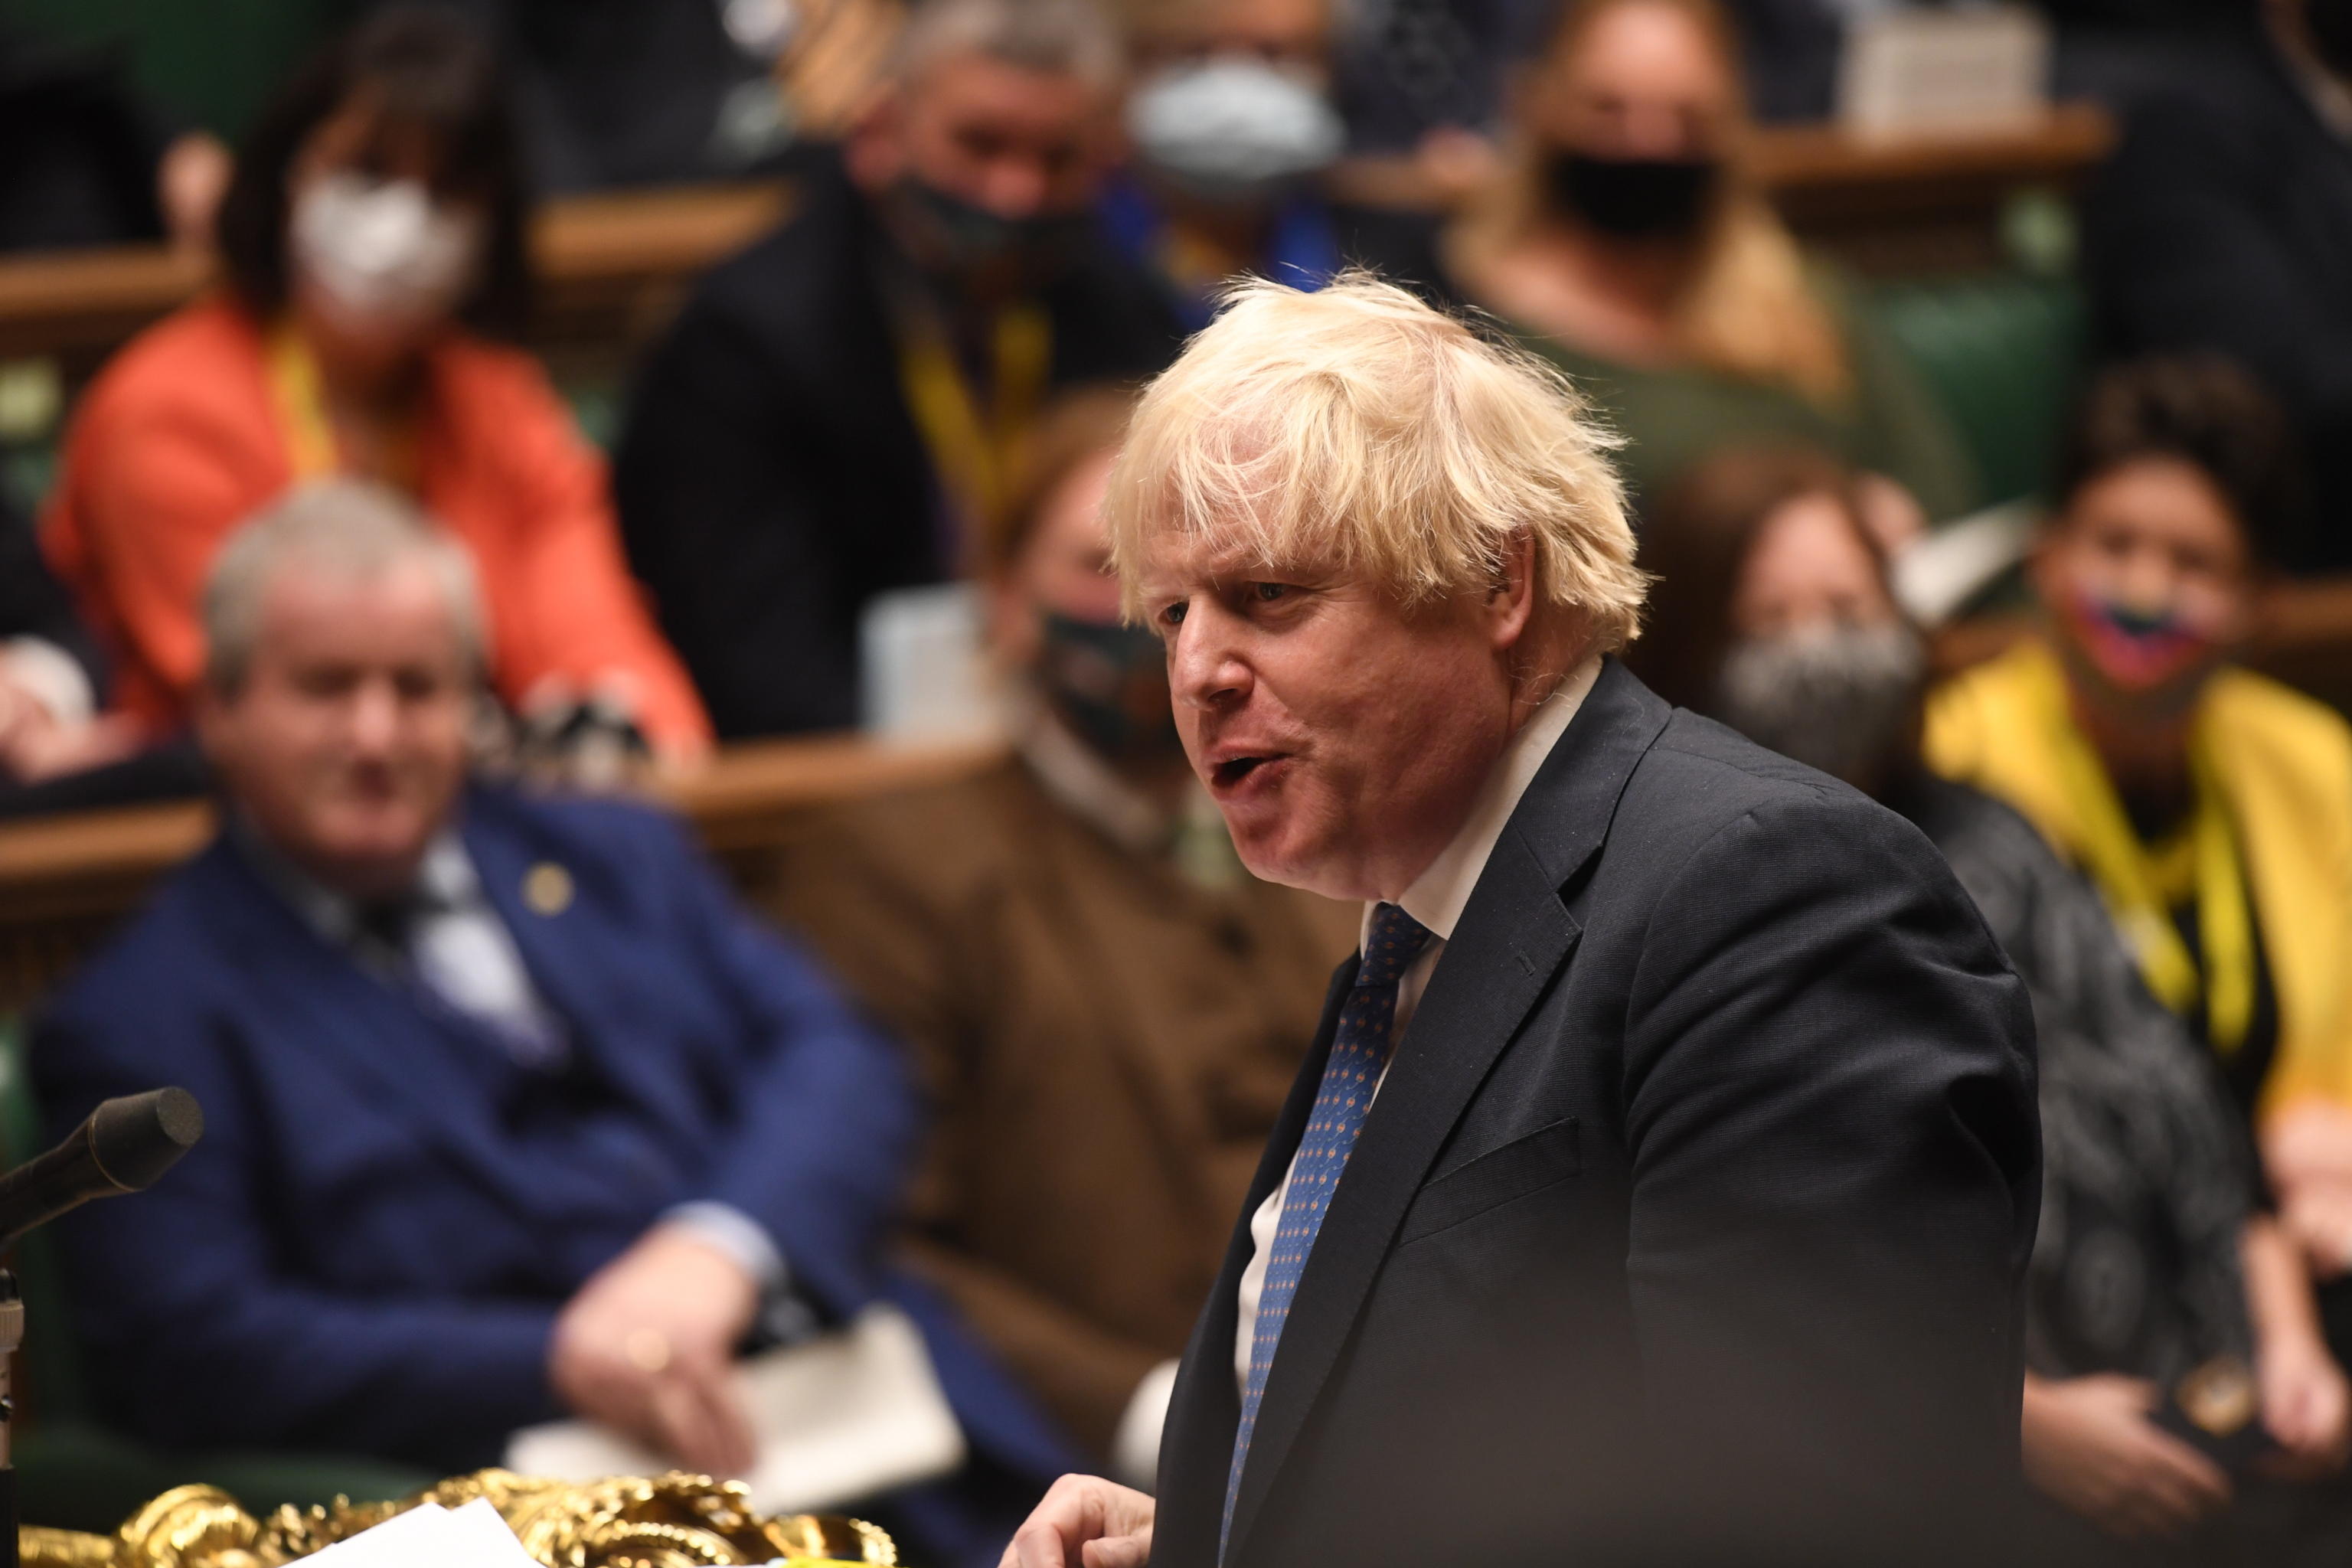 Boris Johnson e il party di compleanno durante il lockdown: il nuovo guaio per il premier britannico